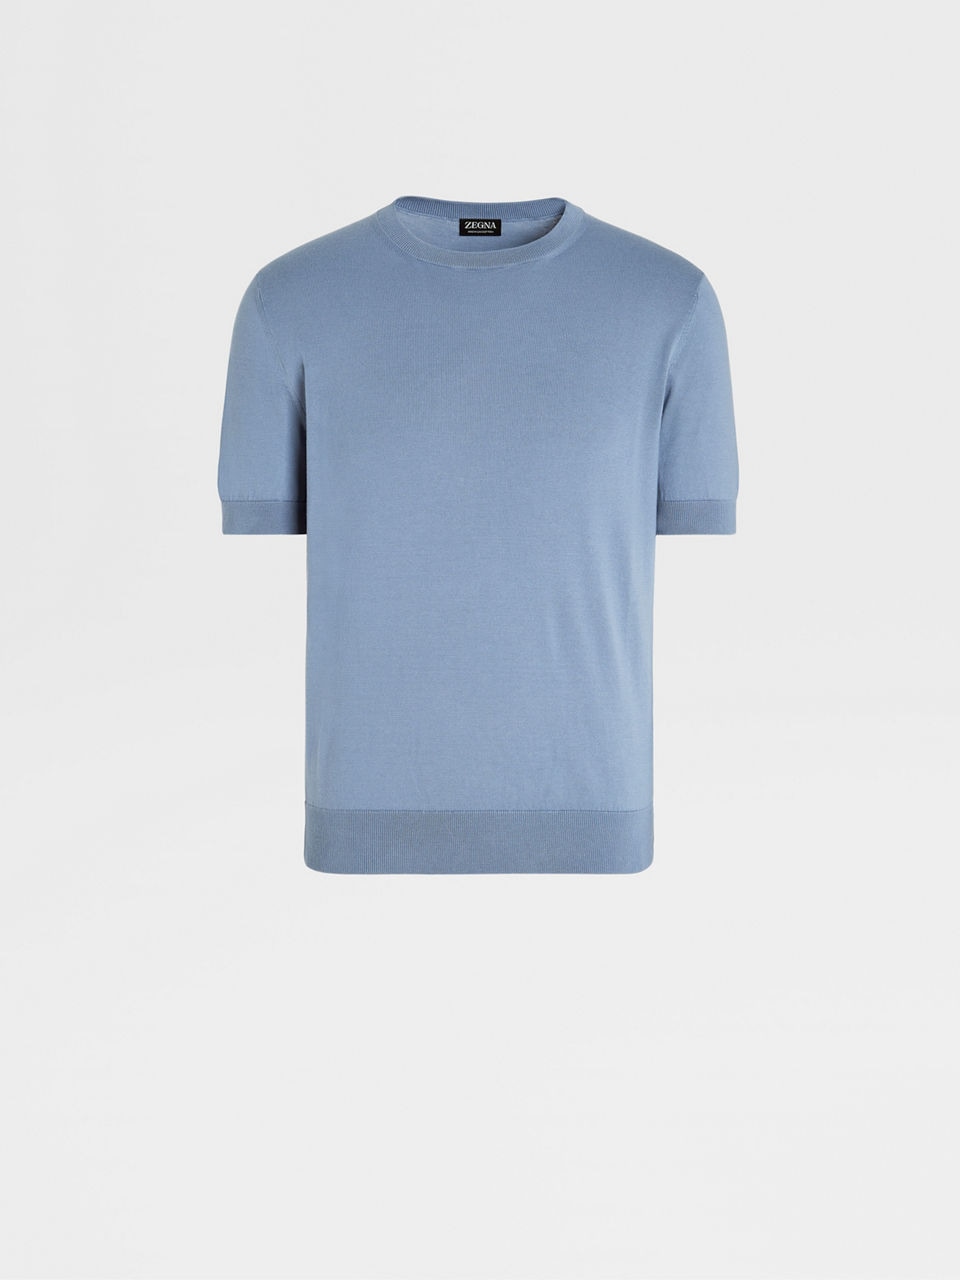 Zegna plain cotton shirt - Blue